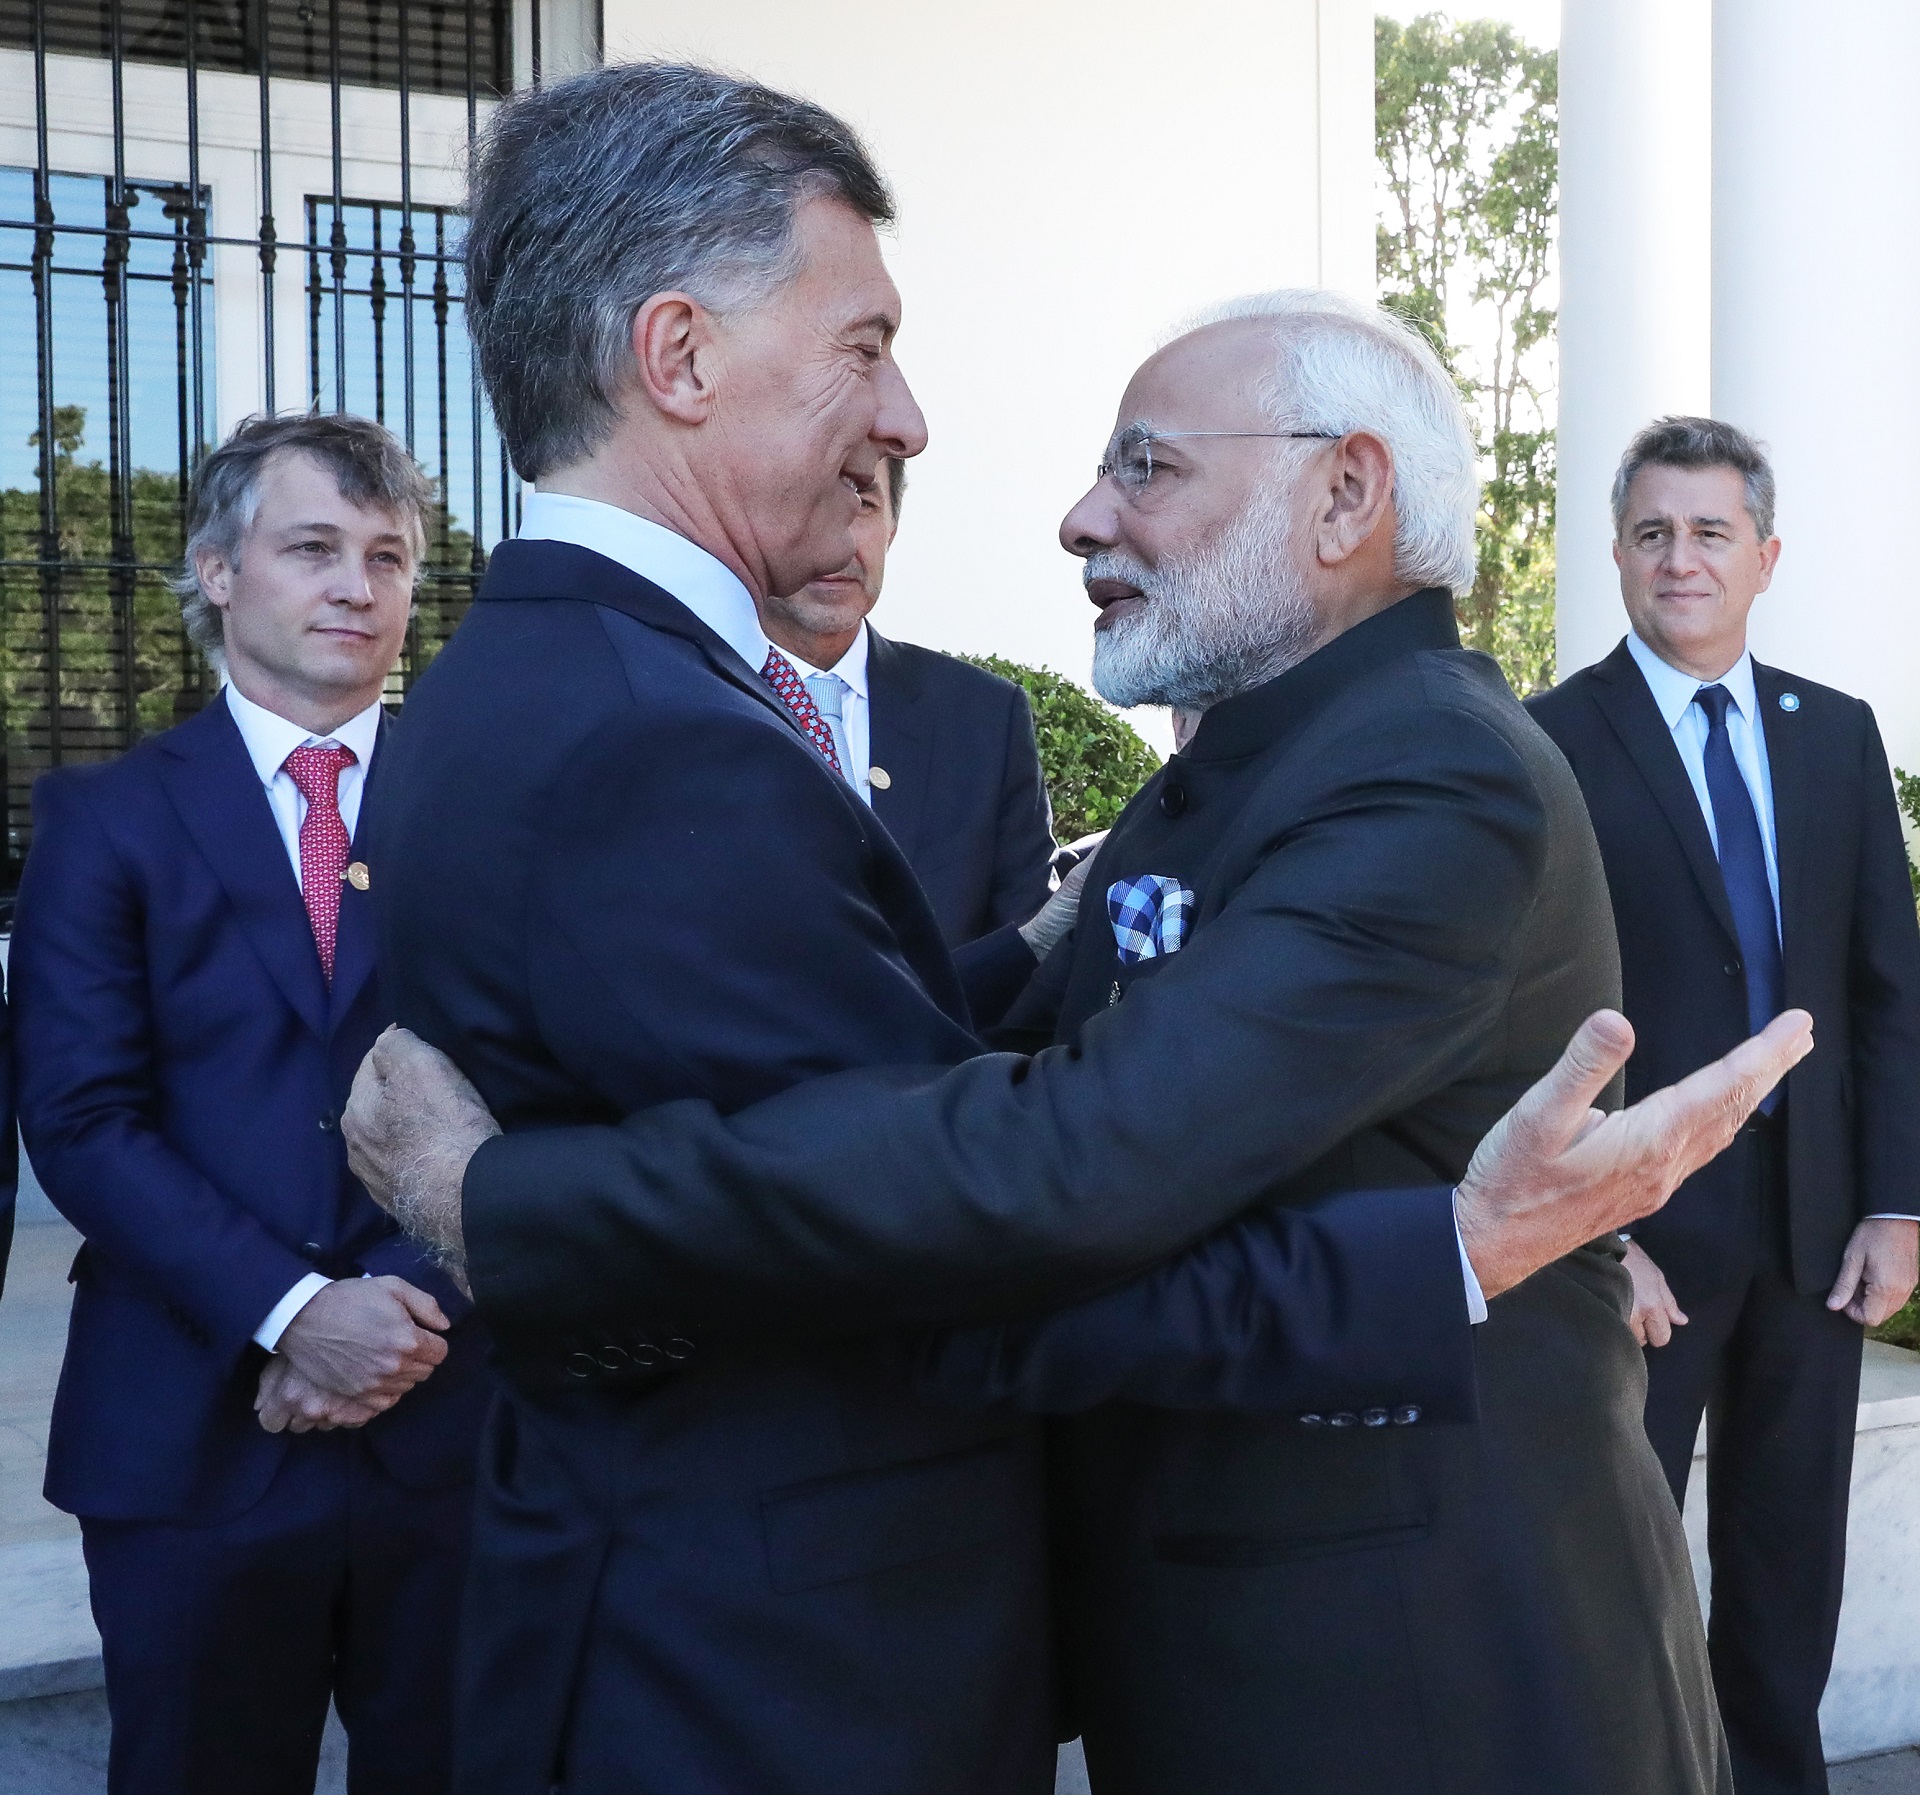 El presidente Macri se reunió con el primer ministro de la India